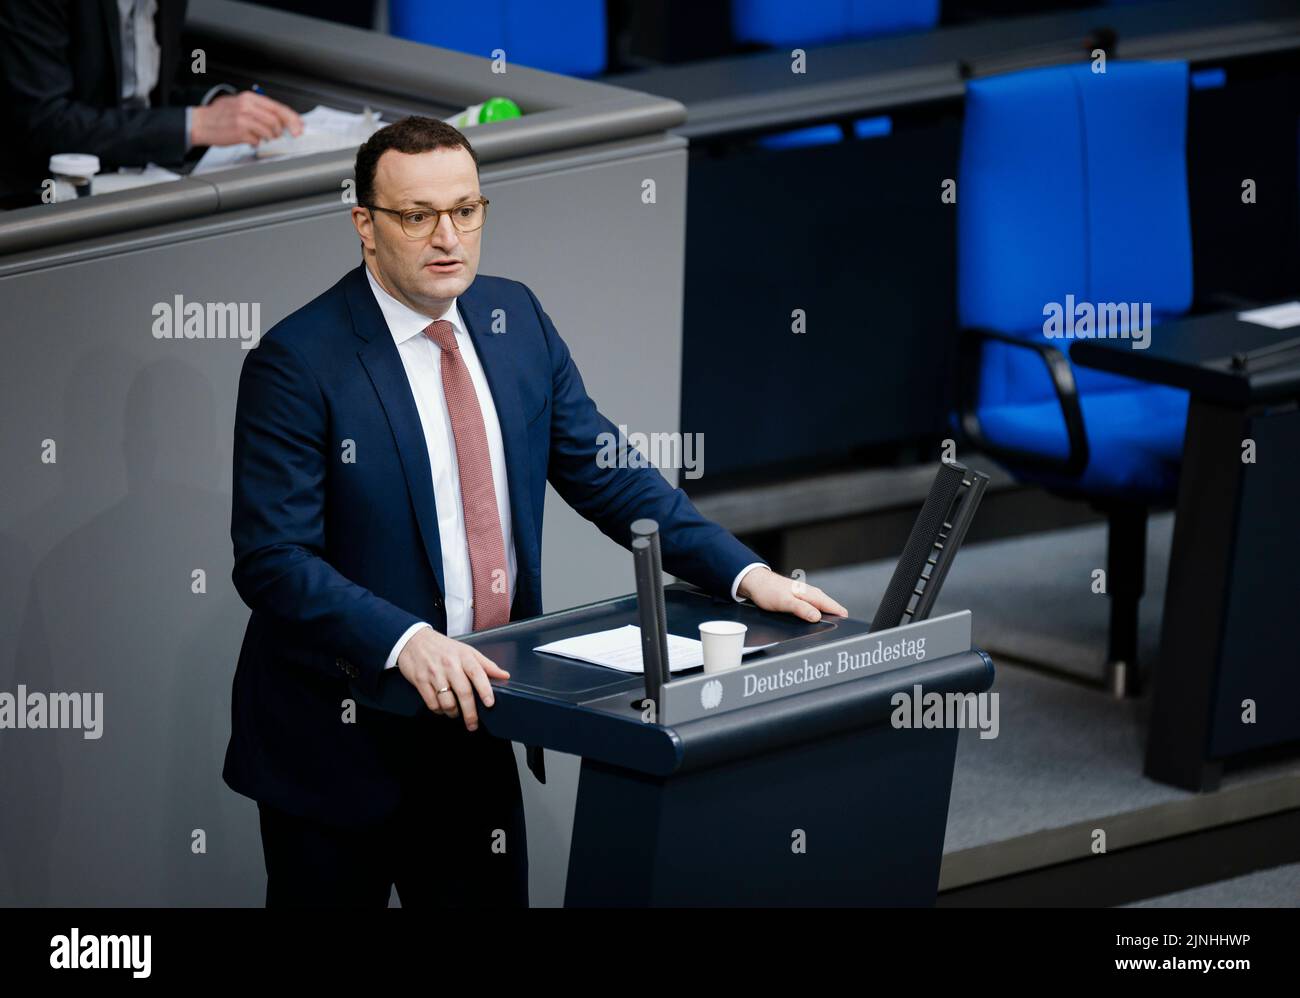 Berlín, Alemania. 17th de Mar de 2022. Jens Spahn, CDU/CSU, grabó durante un discurso sobre el tema del suministro seguro de energía en el Bundestag alemán en Berlín, el 17th de marzo de 2022. Crédito: dpa/Alamy Live News Foto de stock